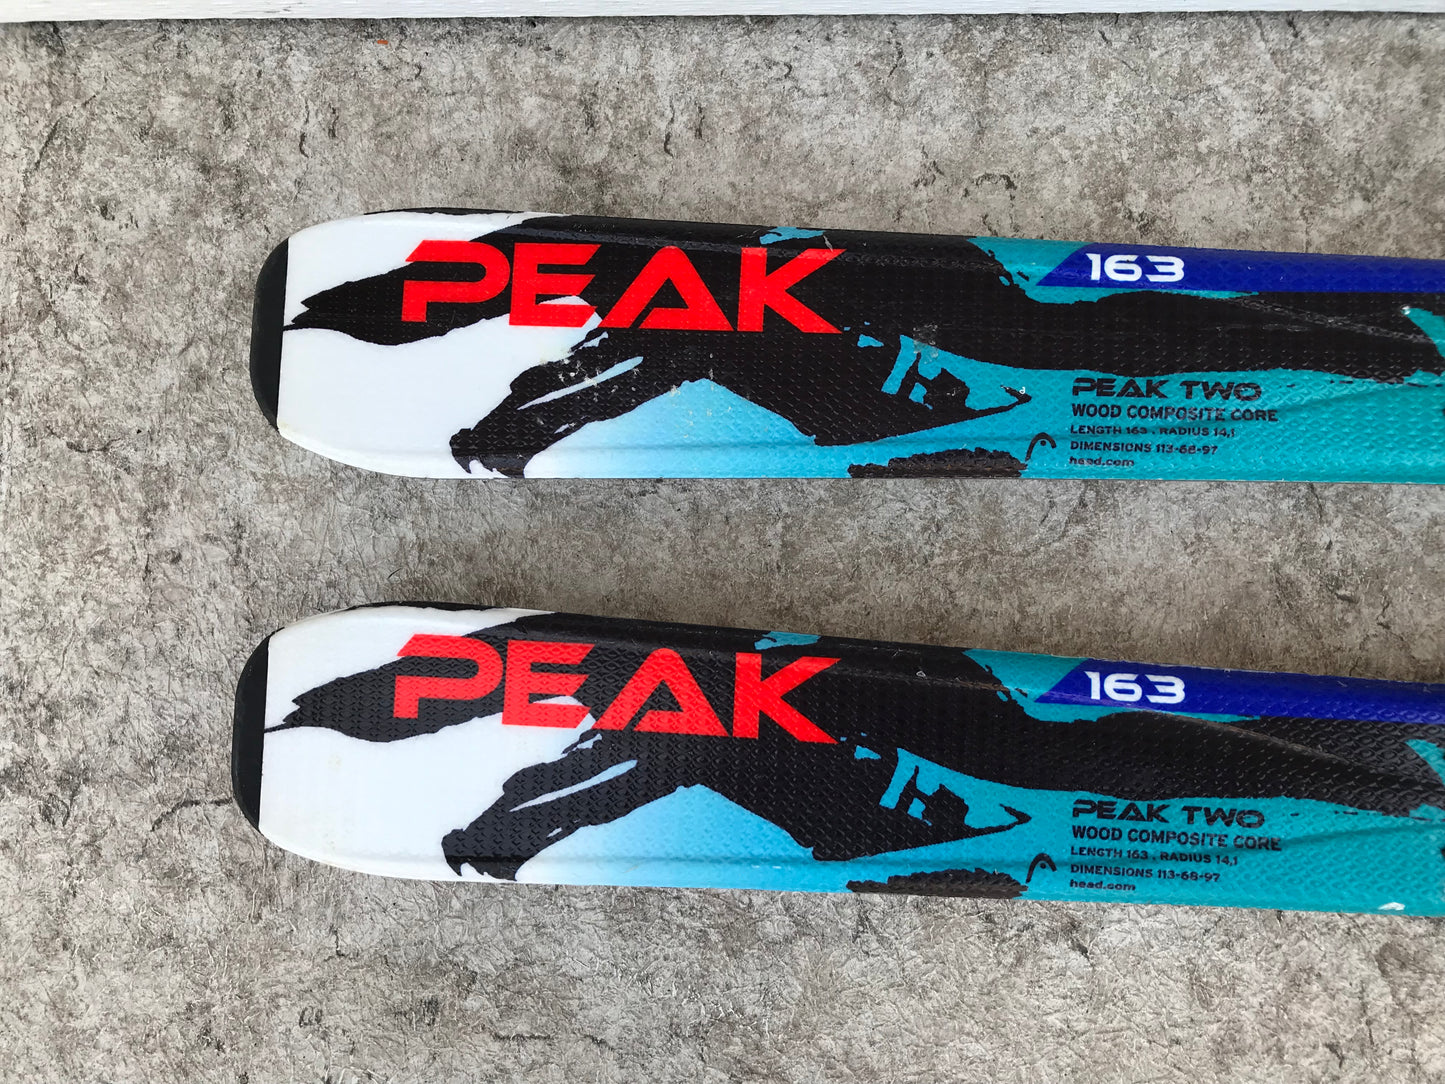 Ski 163 Head Peak Teal Red Black Parabolic With Bindings